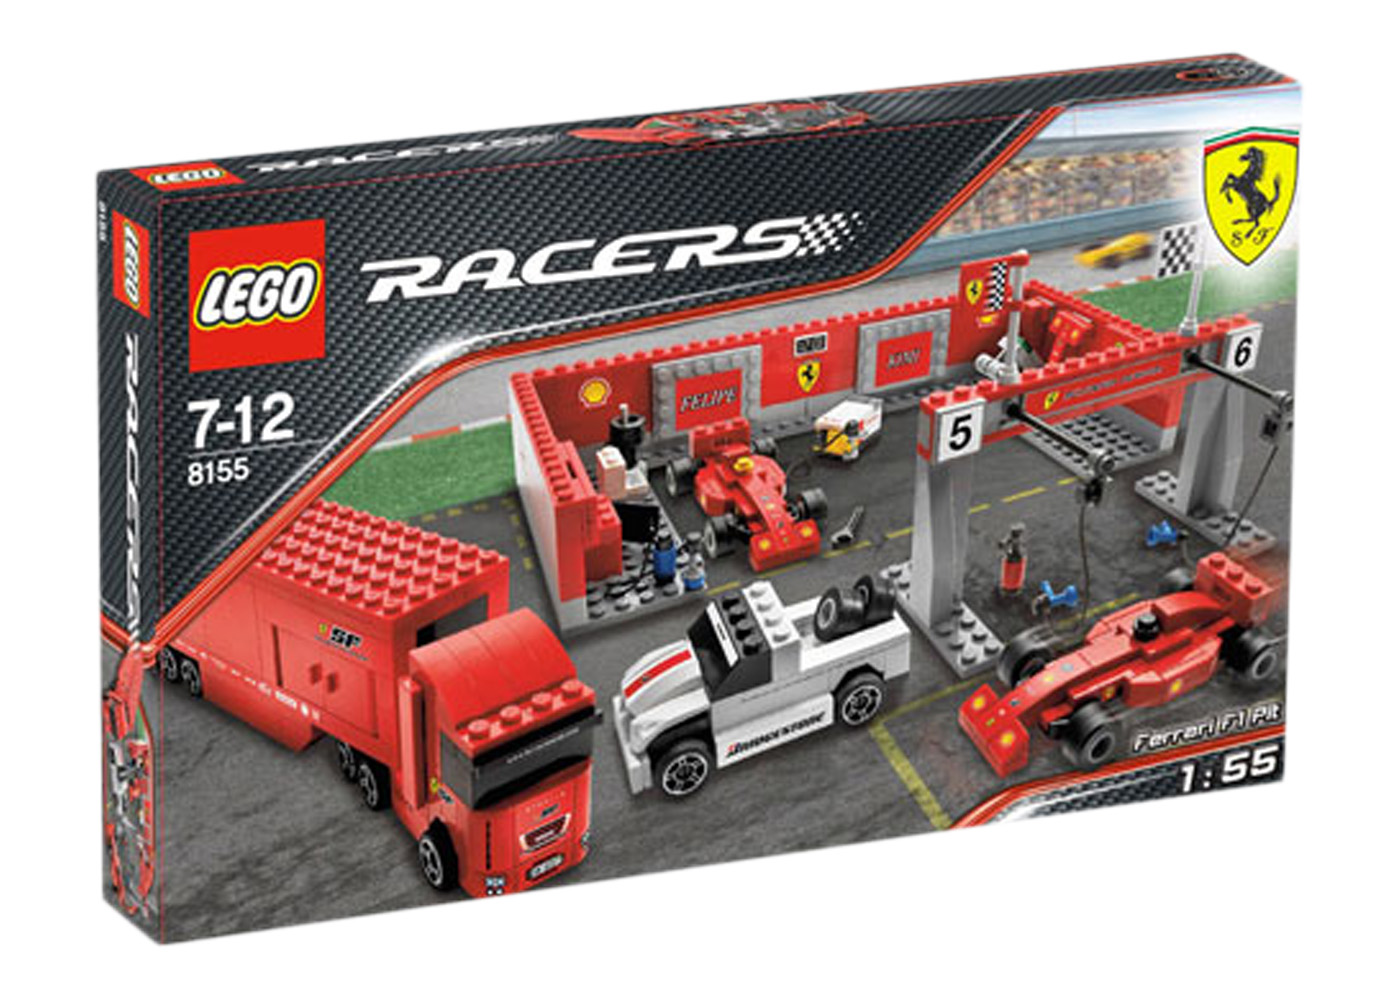 LEGO Racers Ferrari 430 Spider Set 8671 - TW